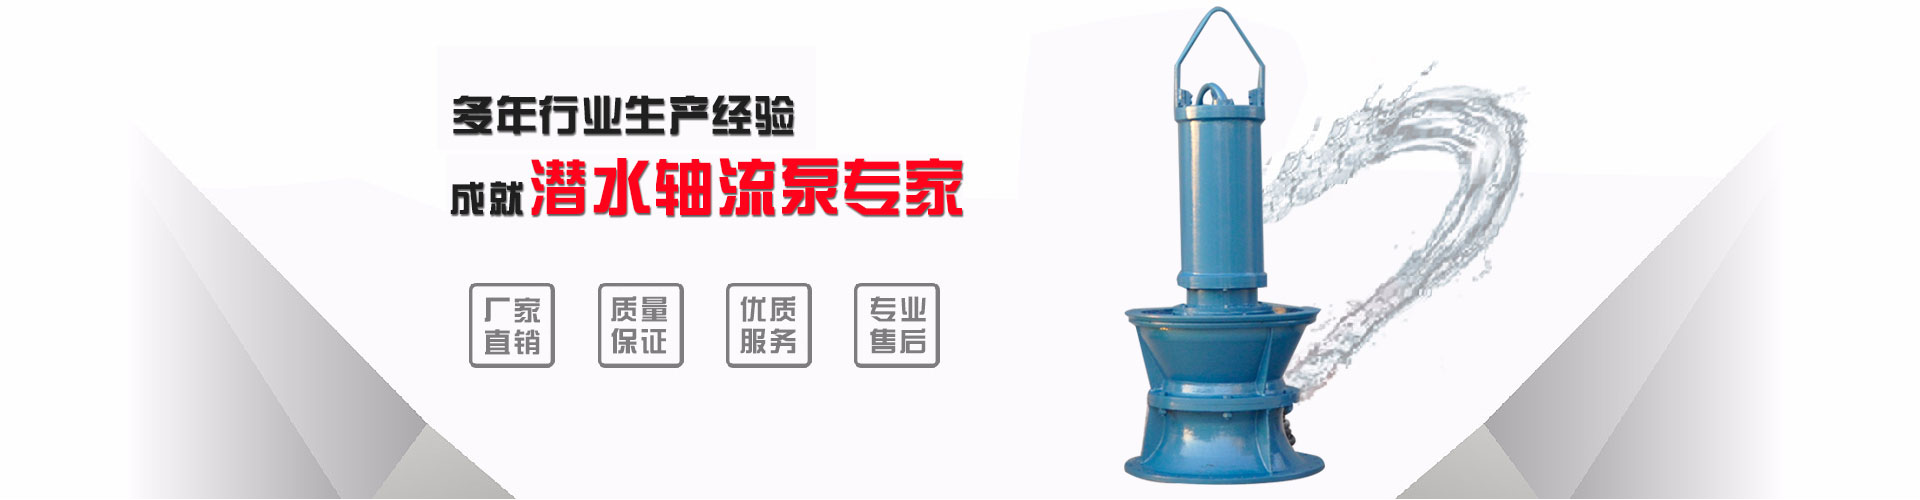 湖南浮筒泵生产厂_长春浮筒泵